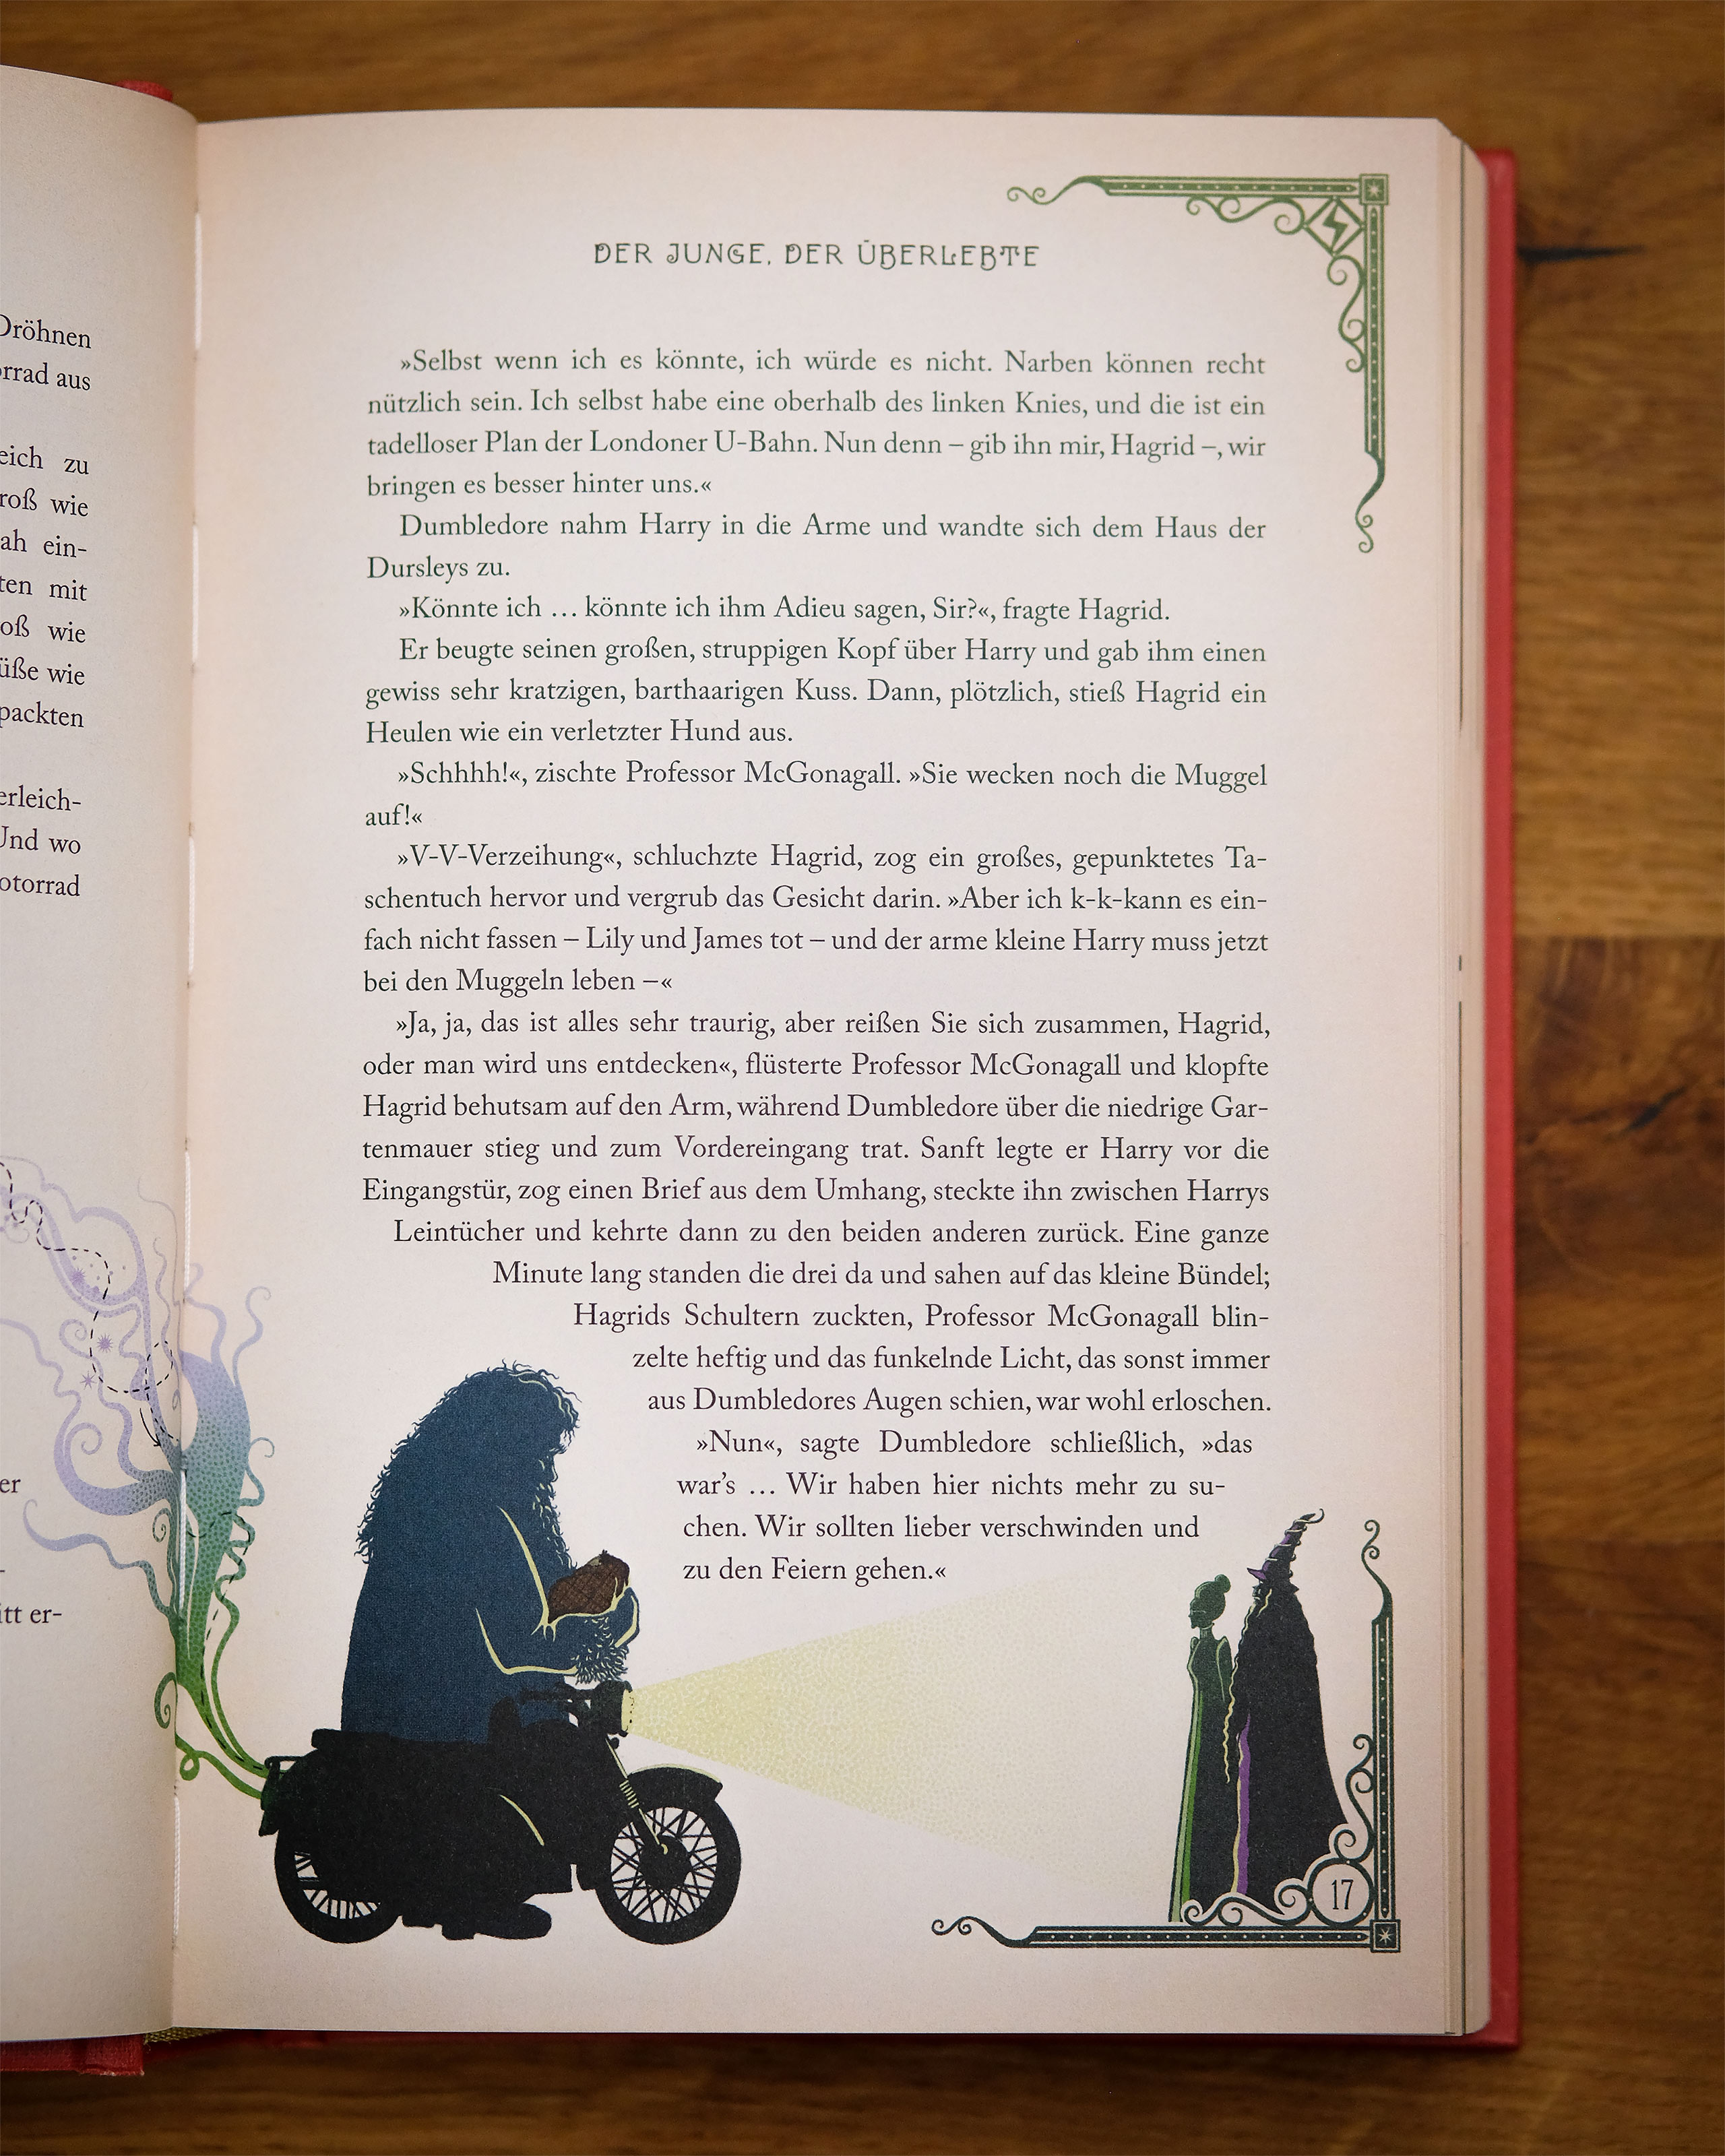 Harry Potter und der Stein der Weisen: MinaLima-Ausgabe (Harry Potter 1):  farbig illustrierte Prachtausgabe mit Goldprägung und zauberhaften